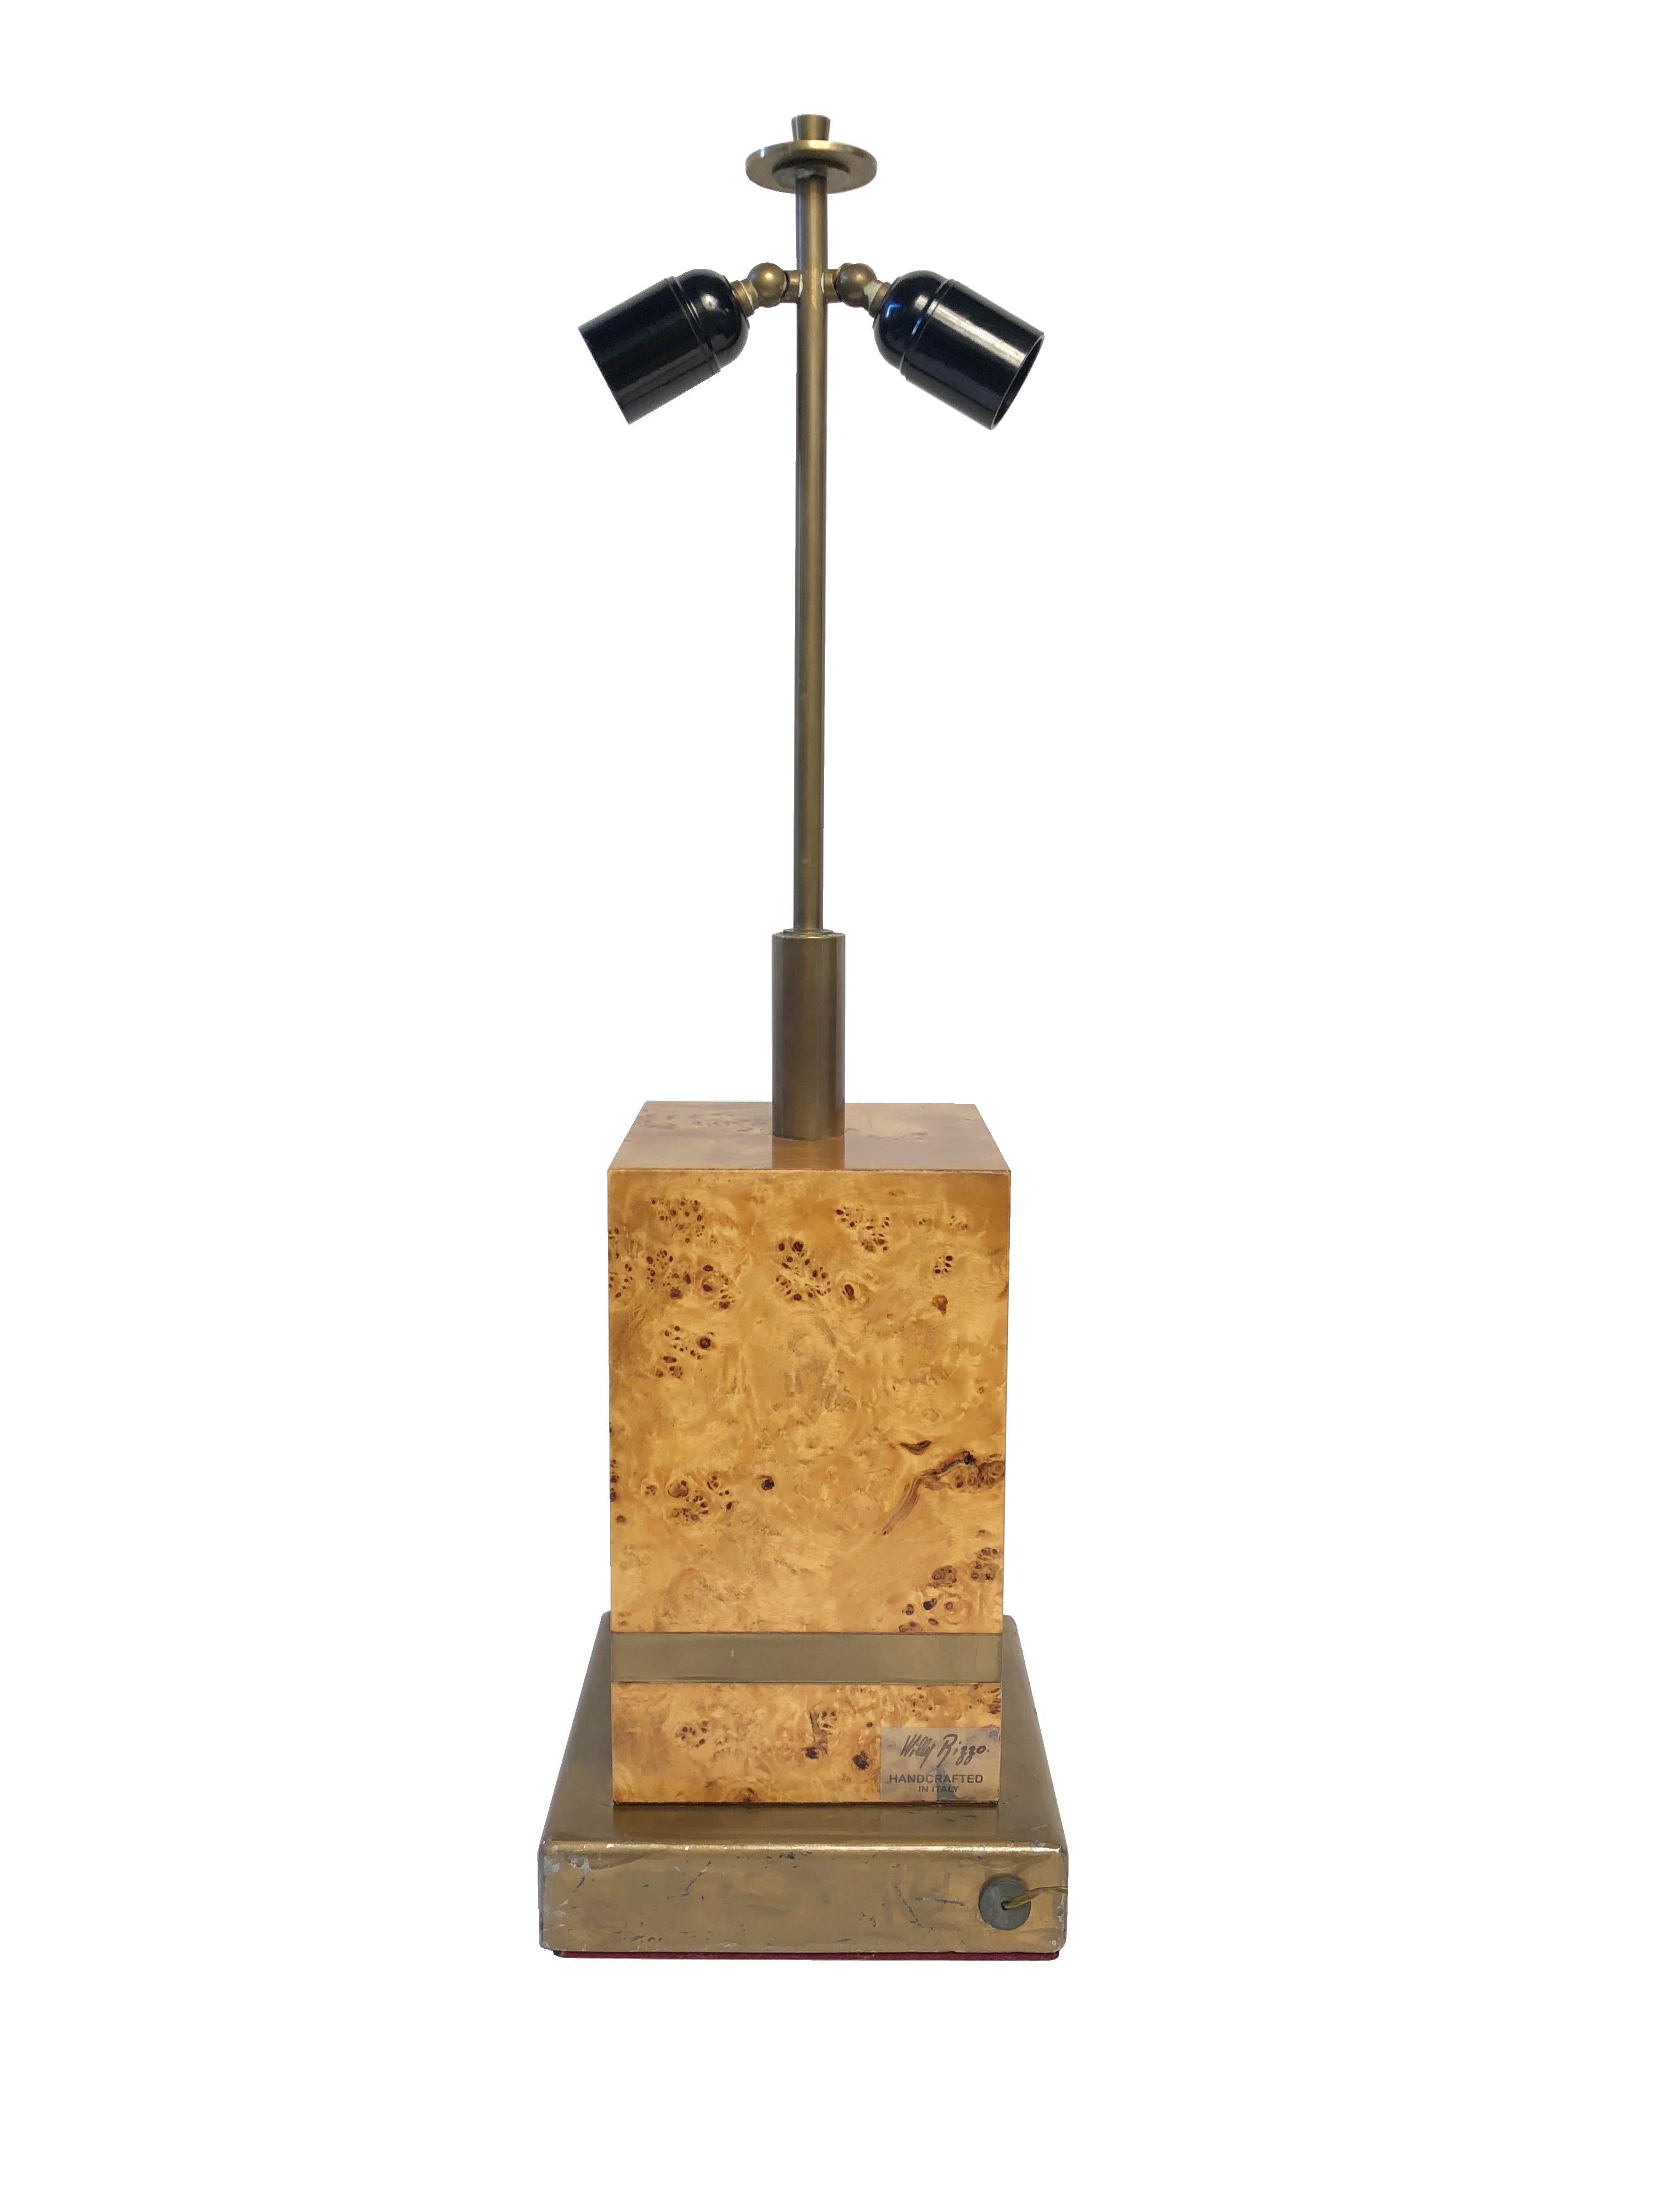 Cette lampe de table est fabriquée en bois de ronce et en laiton par l'Italien Willy Rizzo, comme le montre l'étiquette sur le côté.
Les deux lumières sont réglables.